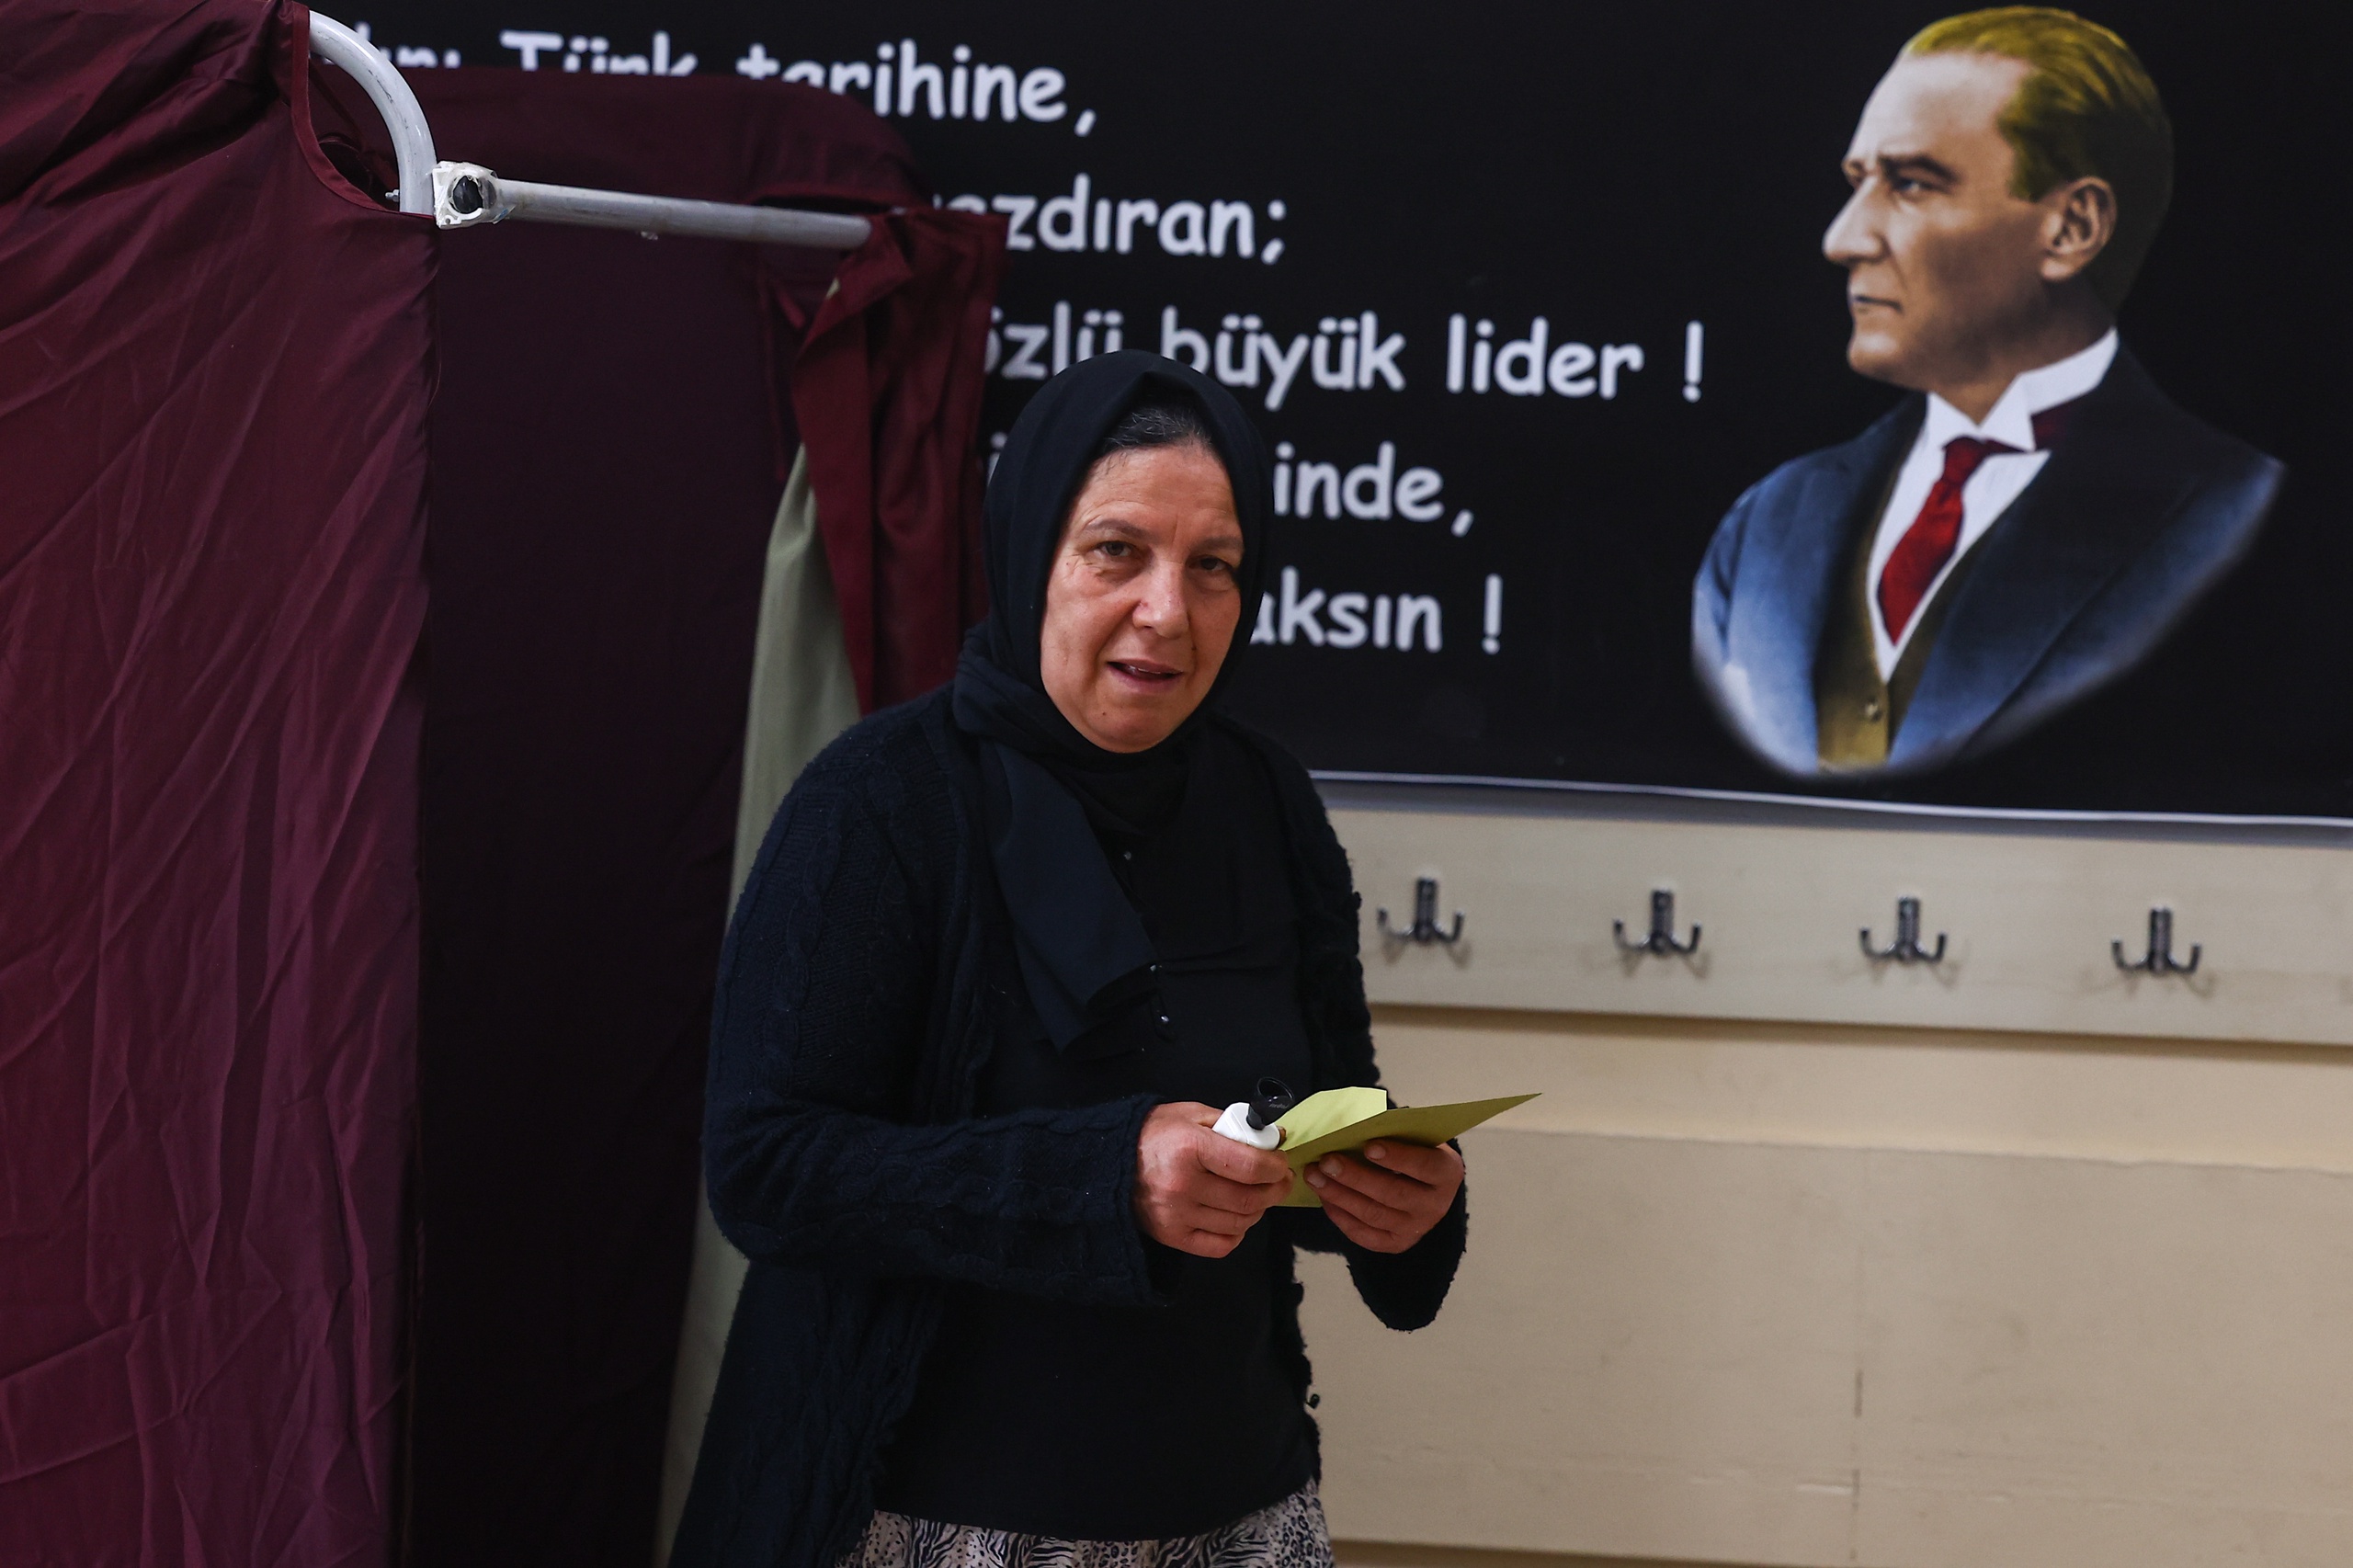 De stembureaus zijn in Turkije geopend voor de beslissende ronde van de presidentsverkiezingen. Ze sluiten om 16.00 uur onze tijd. De eerste uitslagen worden aan het begin van de avond verwacht. 